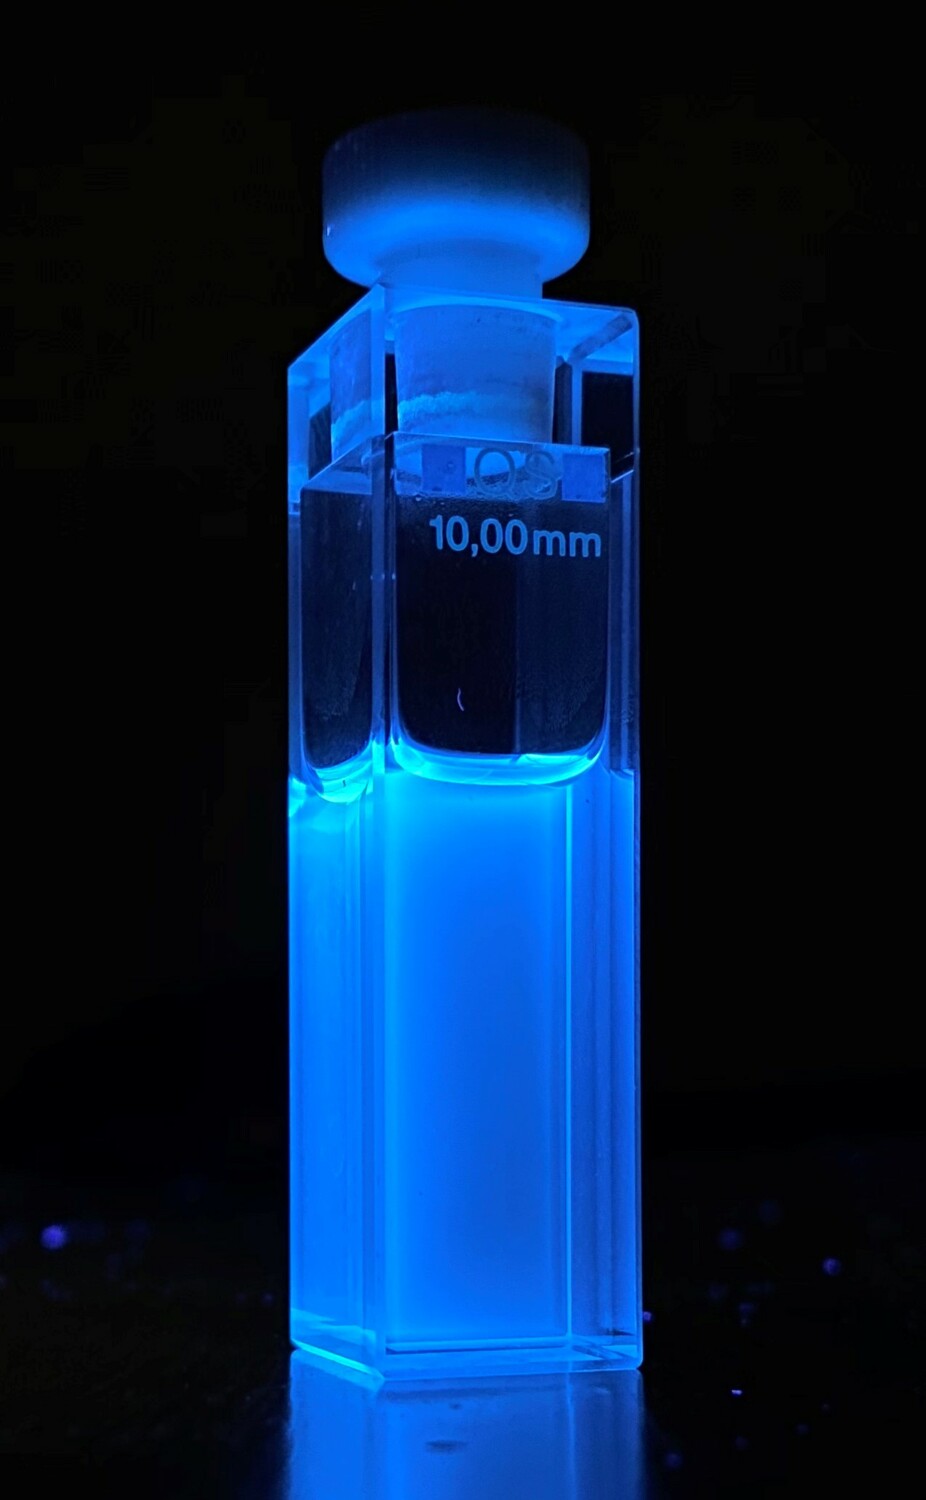 Fluoreszenz eines elektrochemisch synthetisierten Tyrosin-derivates unter UV-Licht.